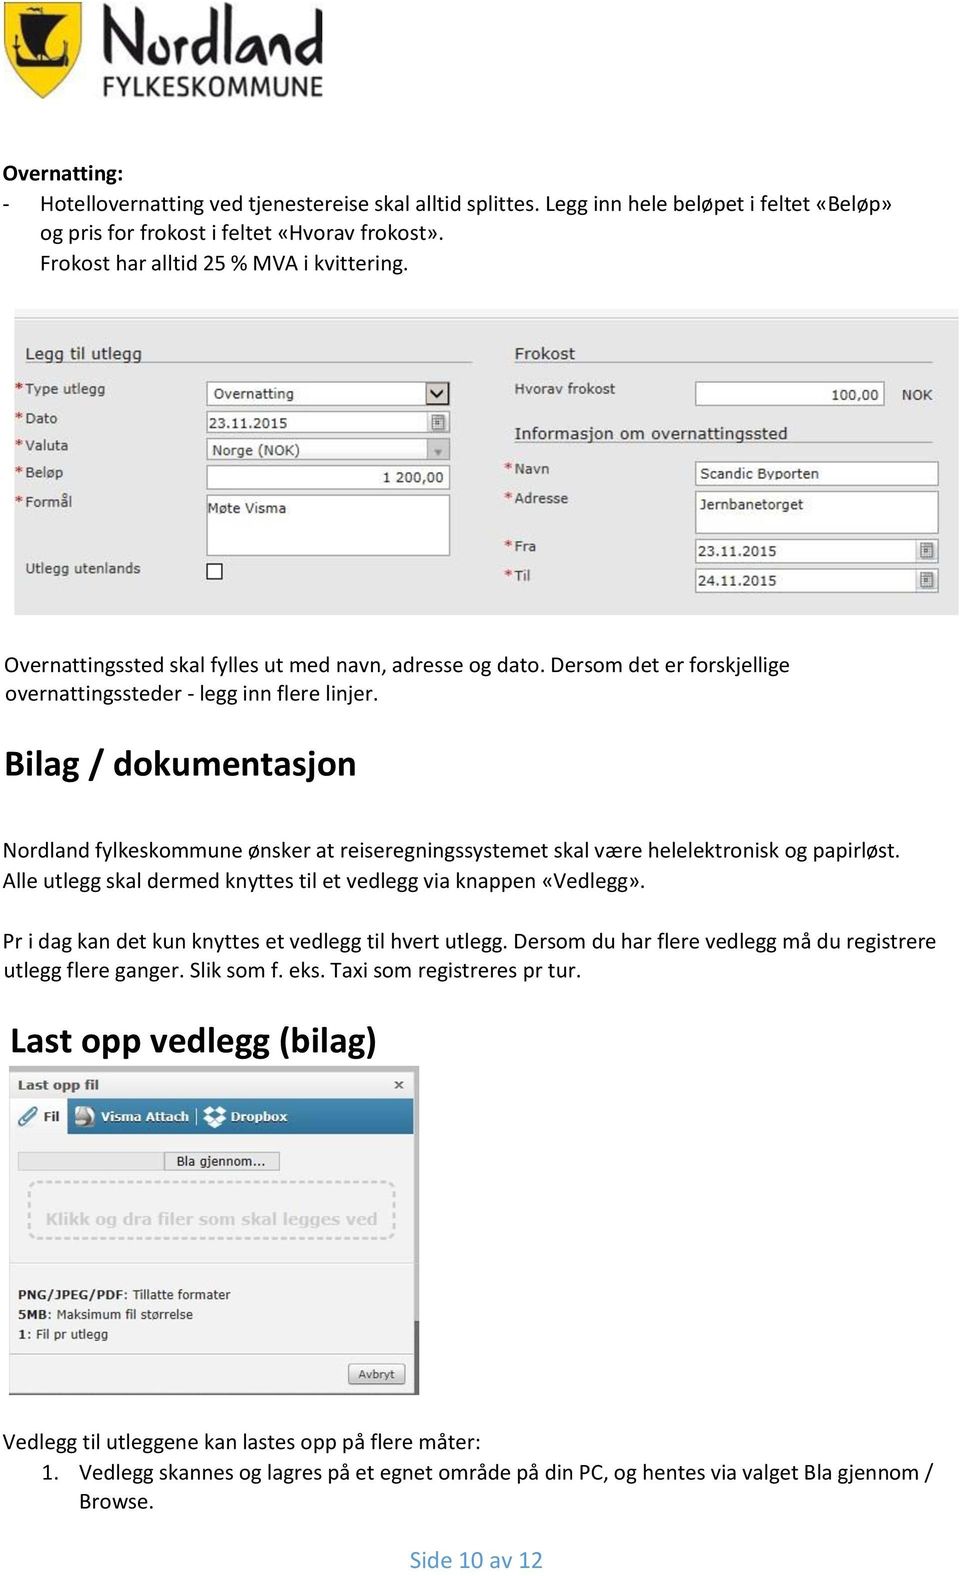 Bilag / dokumentasjon Nordland fylkeskommune ønsker at reiseregningssystemet skal være helelektronisk og papirløst. Alle utlegg skal dermed knyttes til et vedlegg via knappen «Vedlegg».